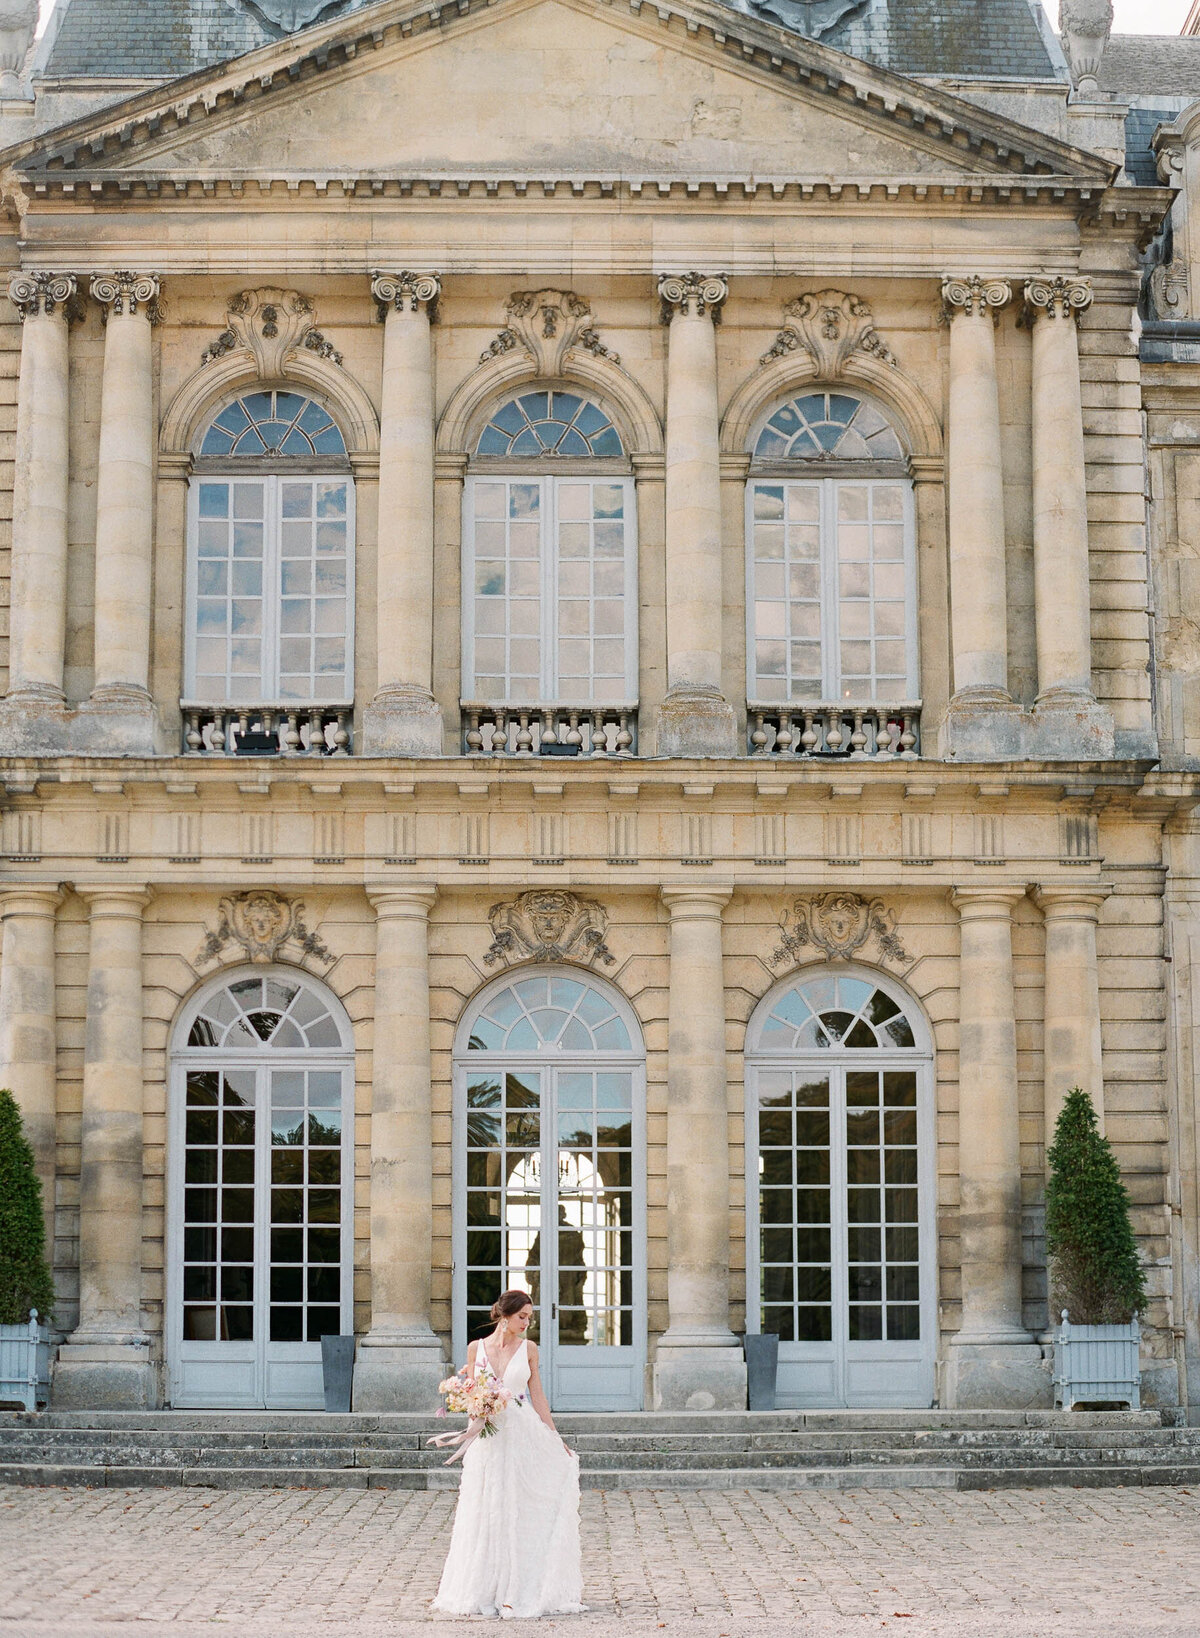 Alexandra-Vonk-wedding-chateau-de-champlatreux-France-38